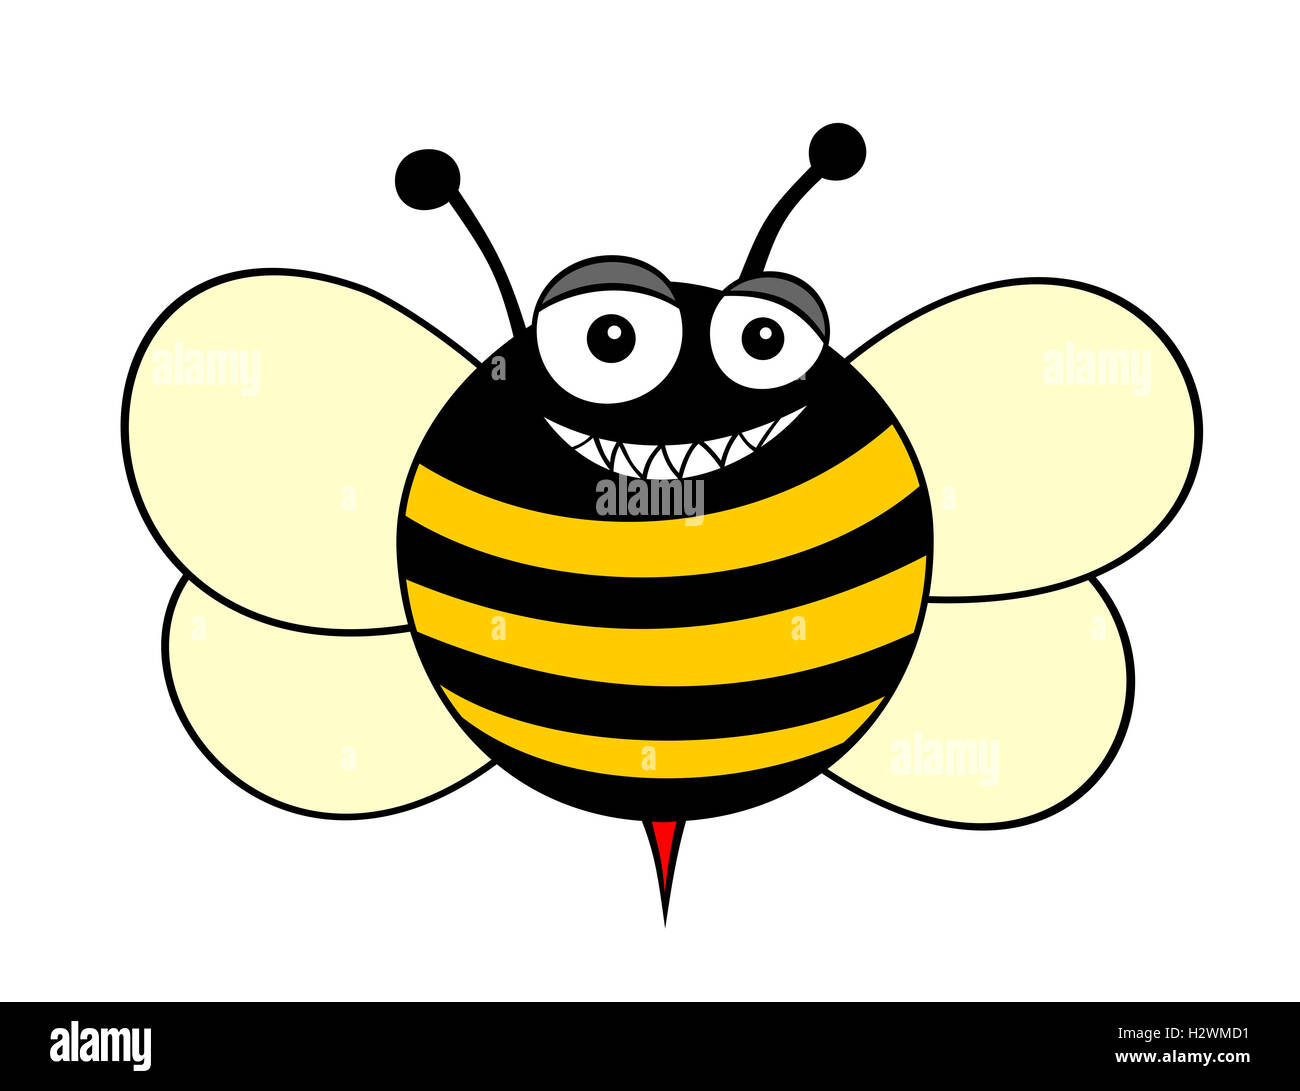 Beispiel Fur Eine Biene Cartoon Stil Stockfotografie Alamy